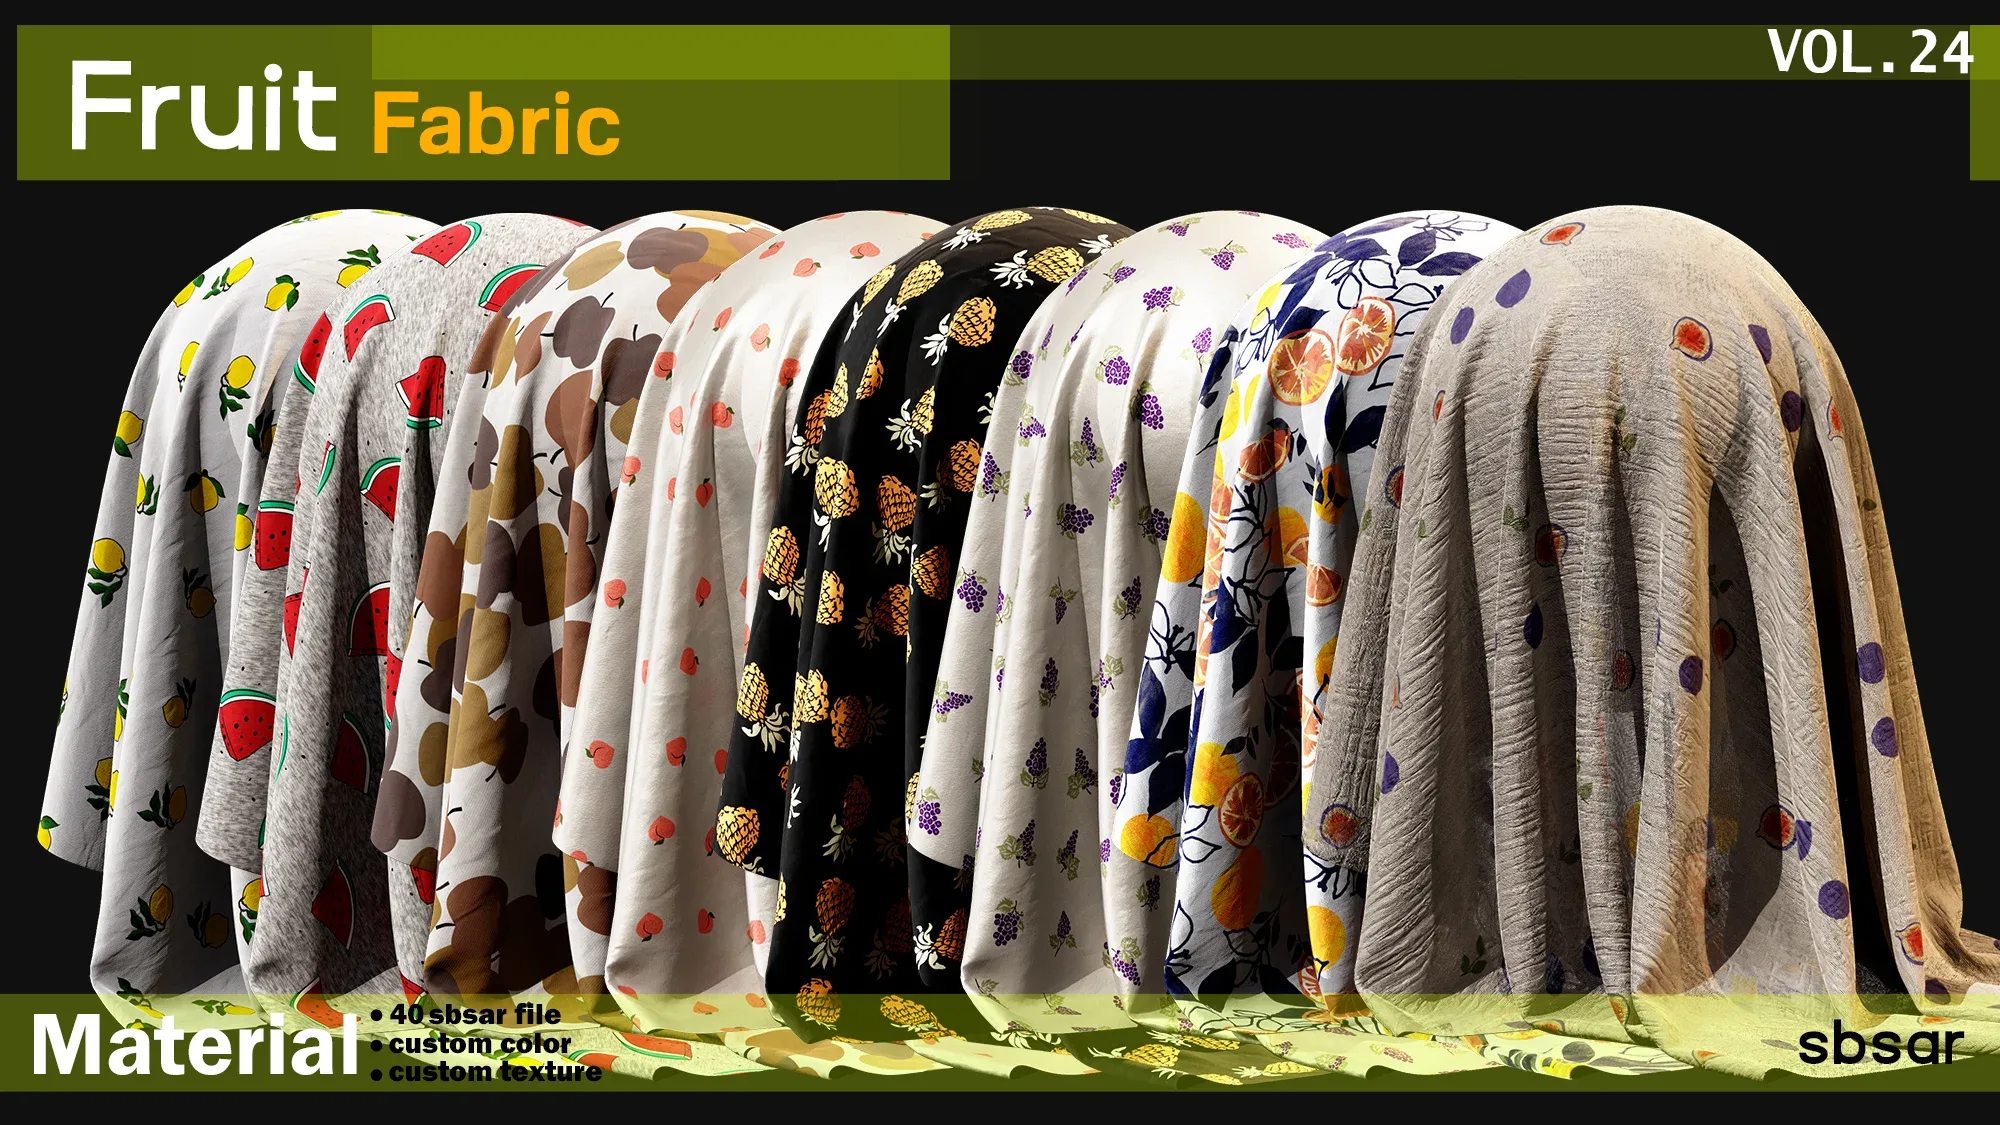 fruit fabric(summer fabric) Material -SBSAR -custom color -custom fabric -VOL 24